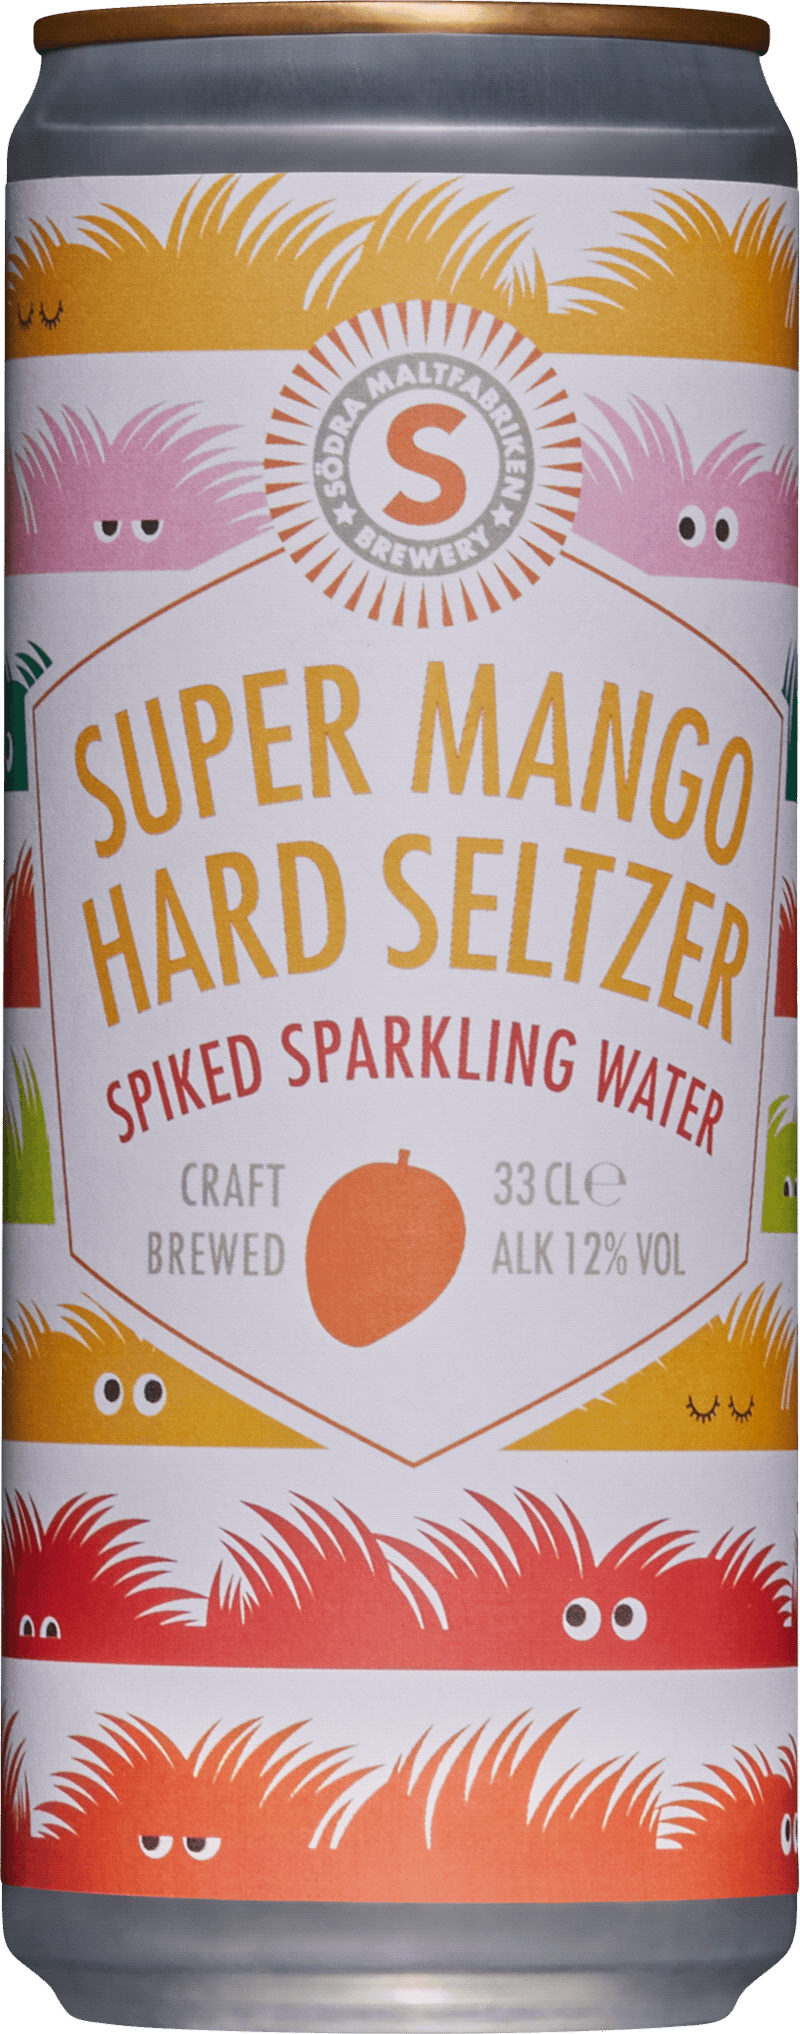 Södra Super Mango Hard Seltzer